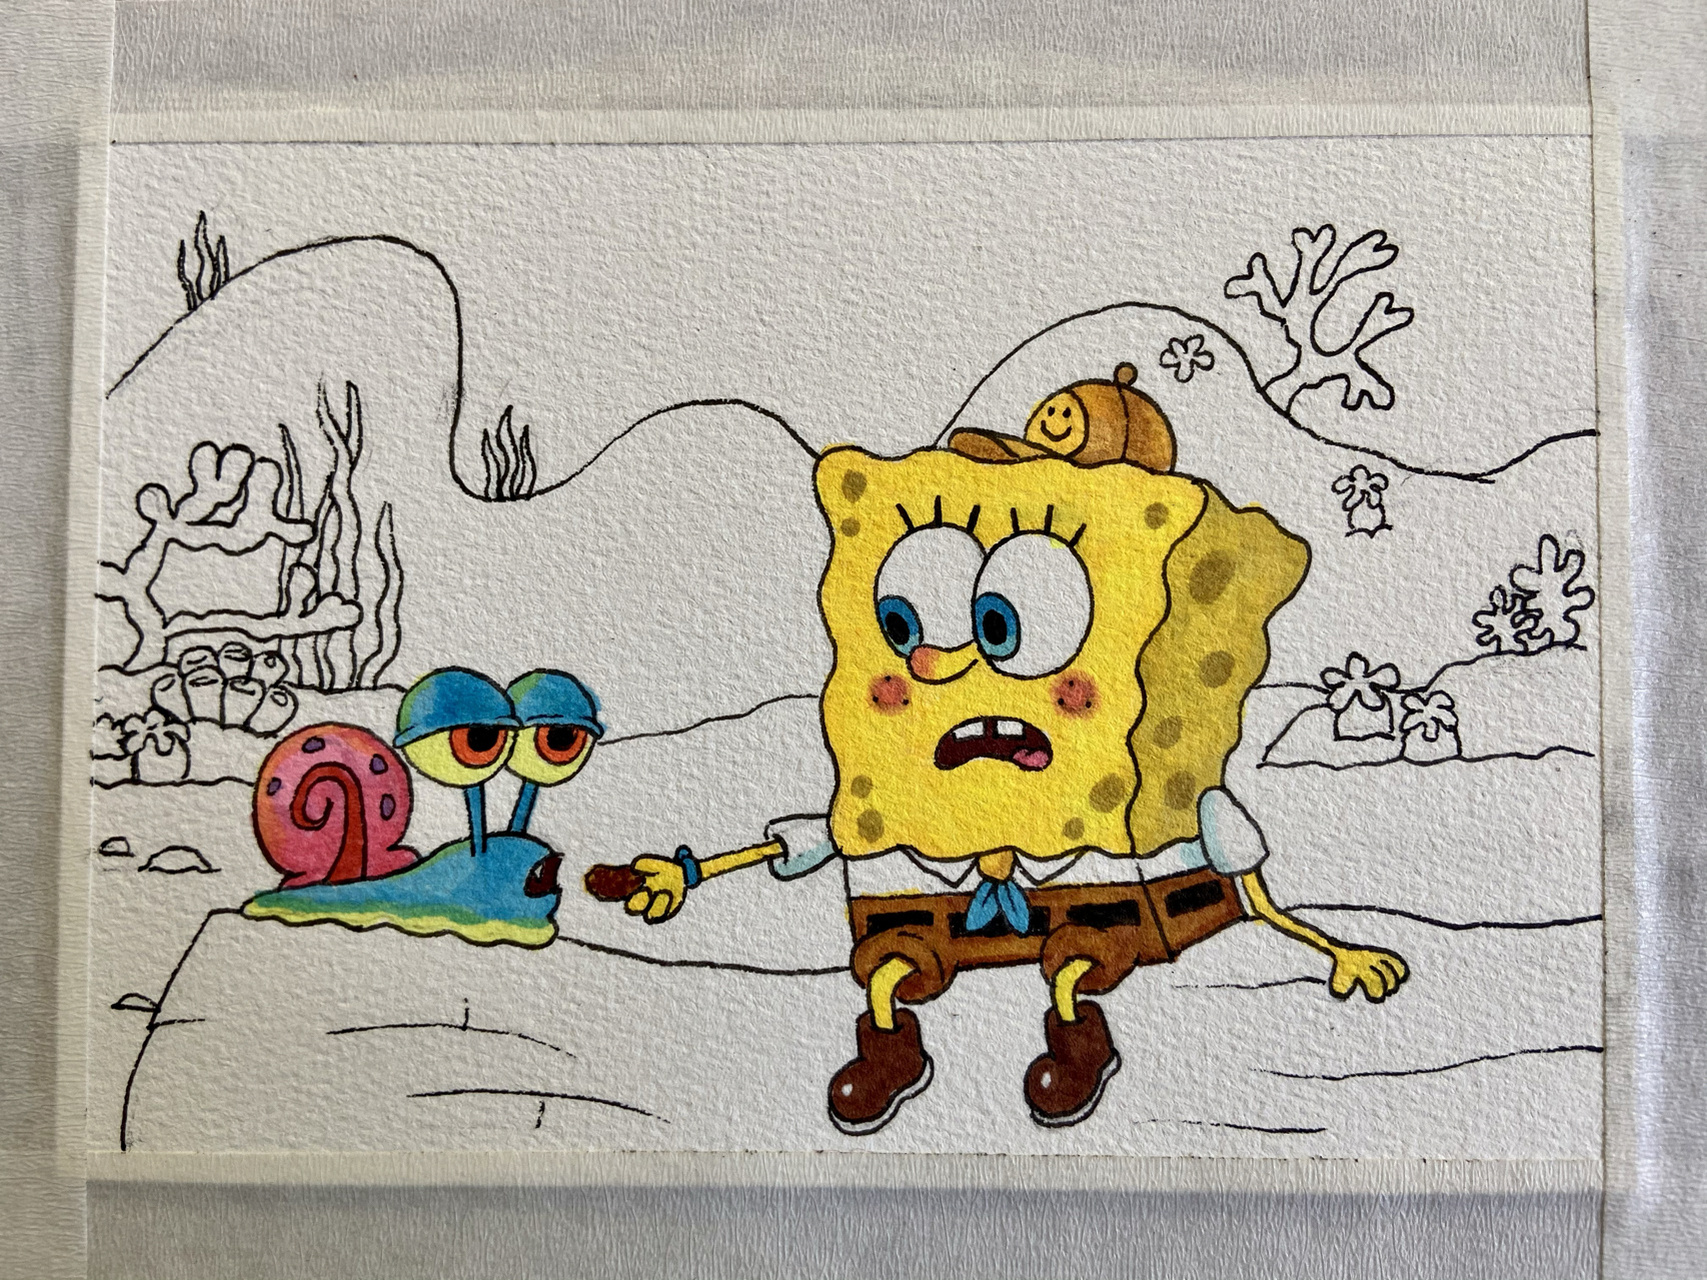 海绵宝宝和小蜗手绘过程图 一起来画吧～ 上色96:马克笔